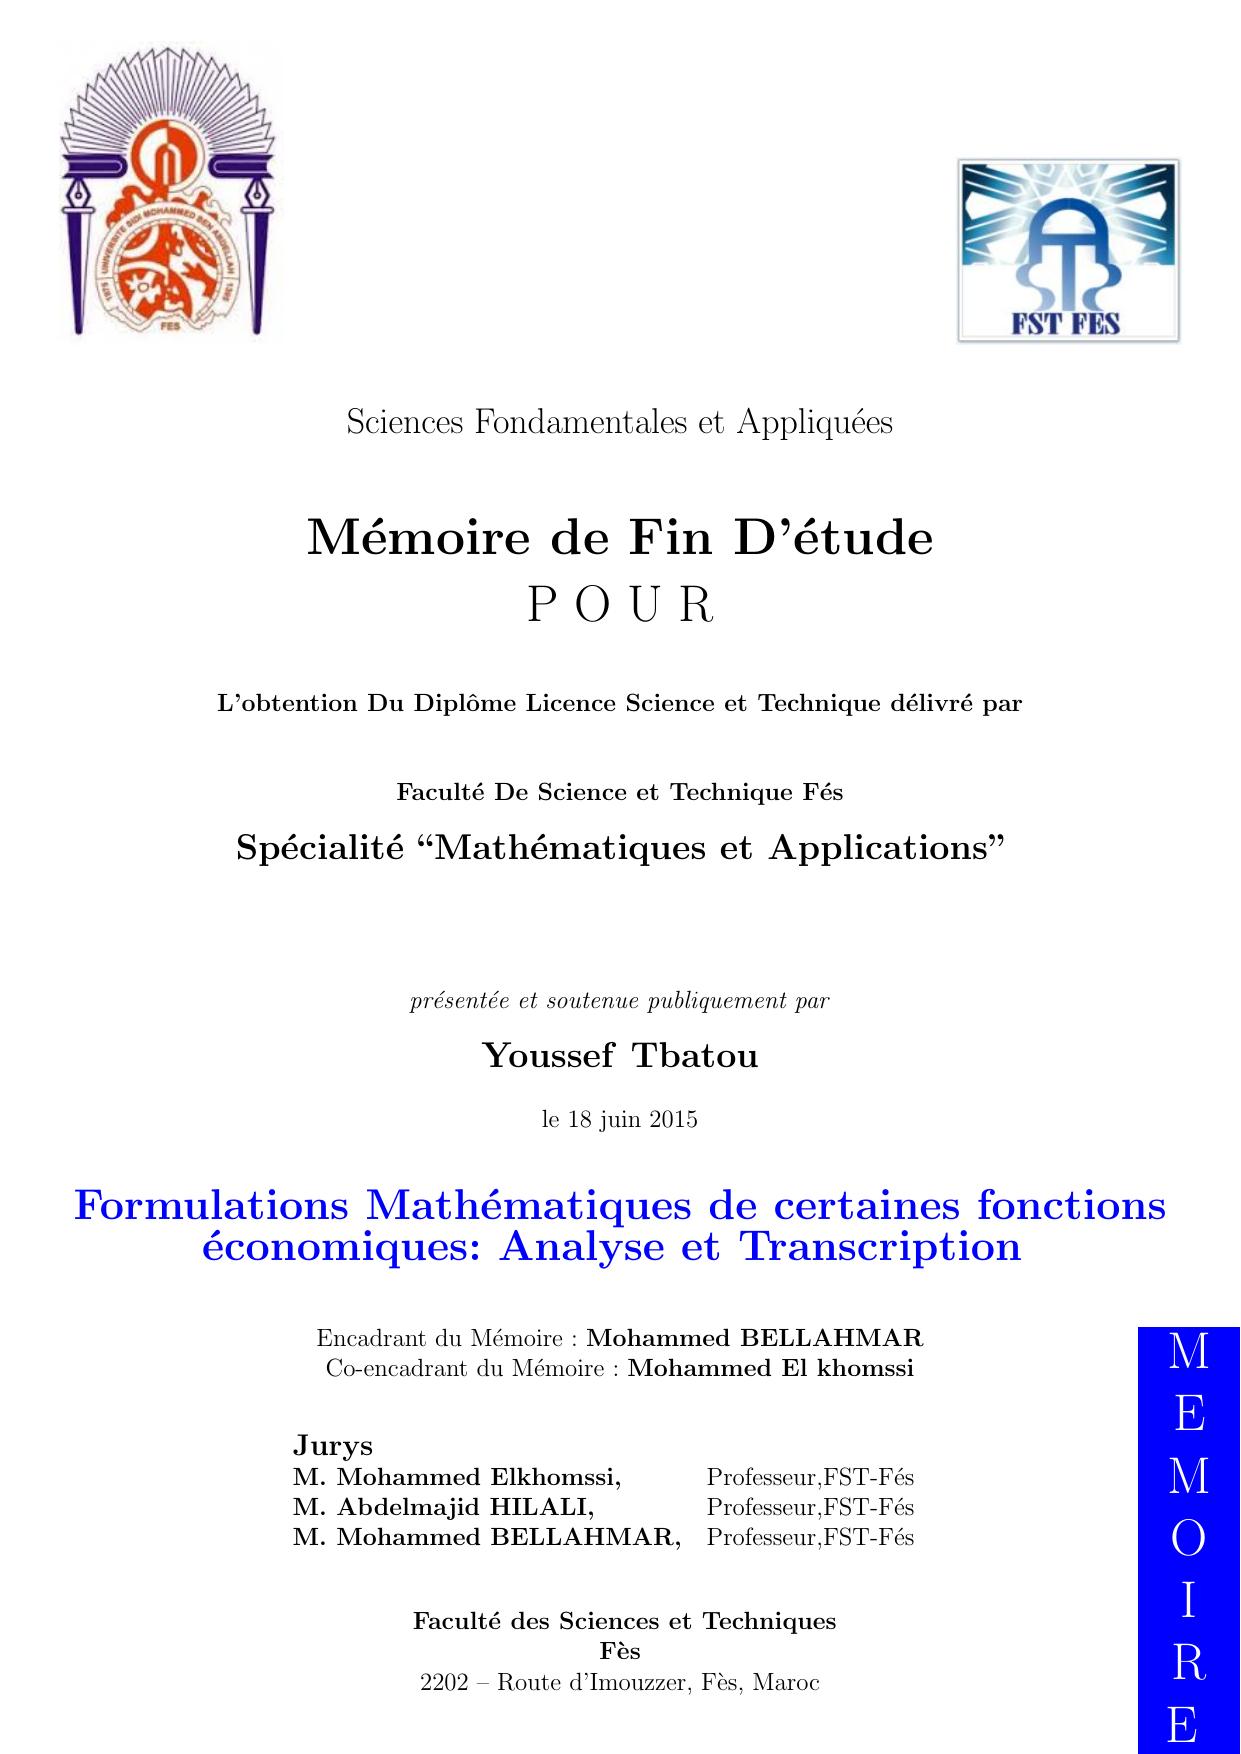 Formulations Mathematiques de certaines fonctions economiques: Analyse et Transcription